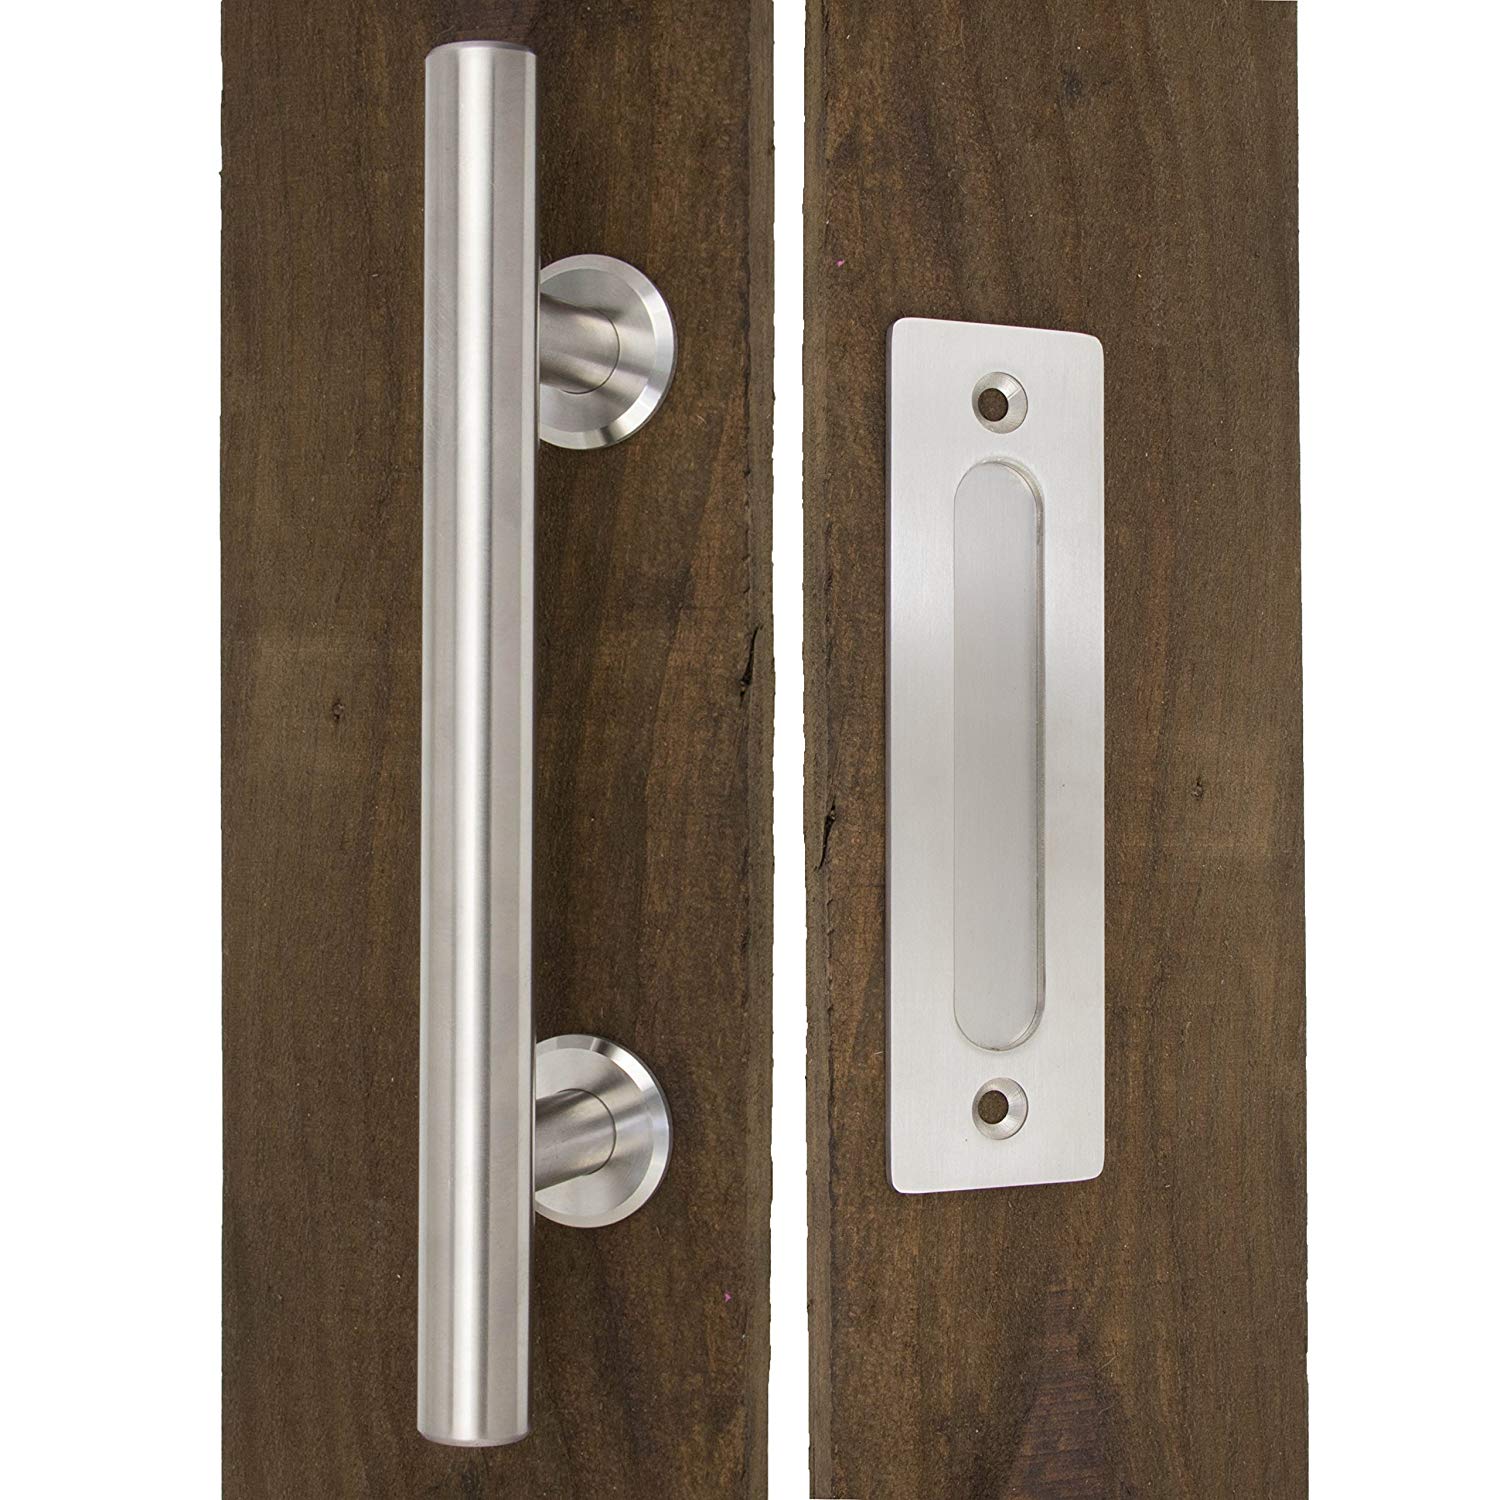 Stort skydelåger dørhåndtag 12 ”begge håndtag til udvendig dør & flush pull til indvendigt moderne stald dør hardware håndtag